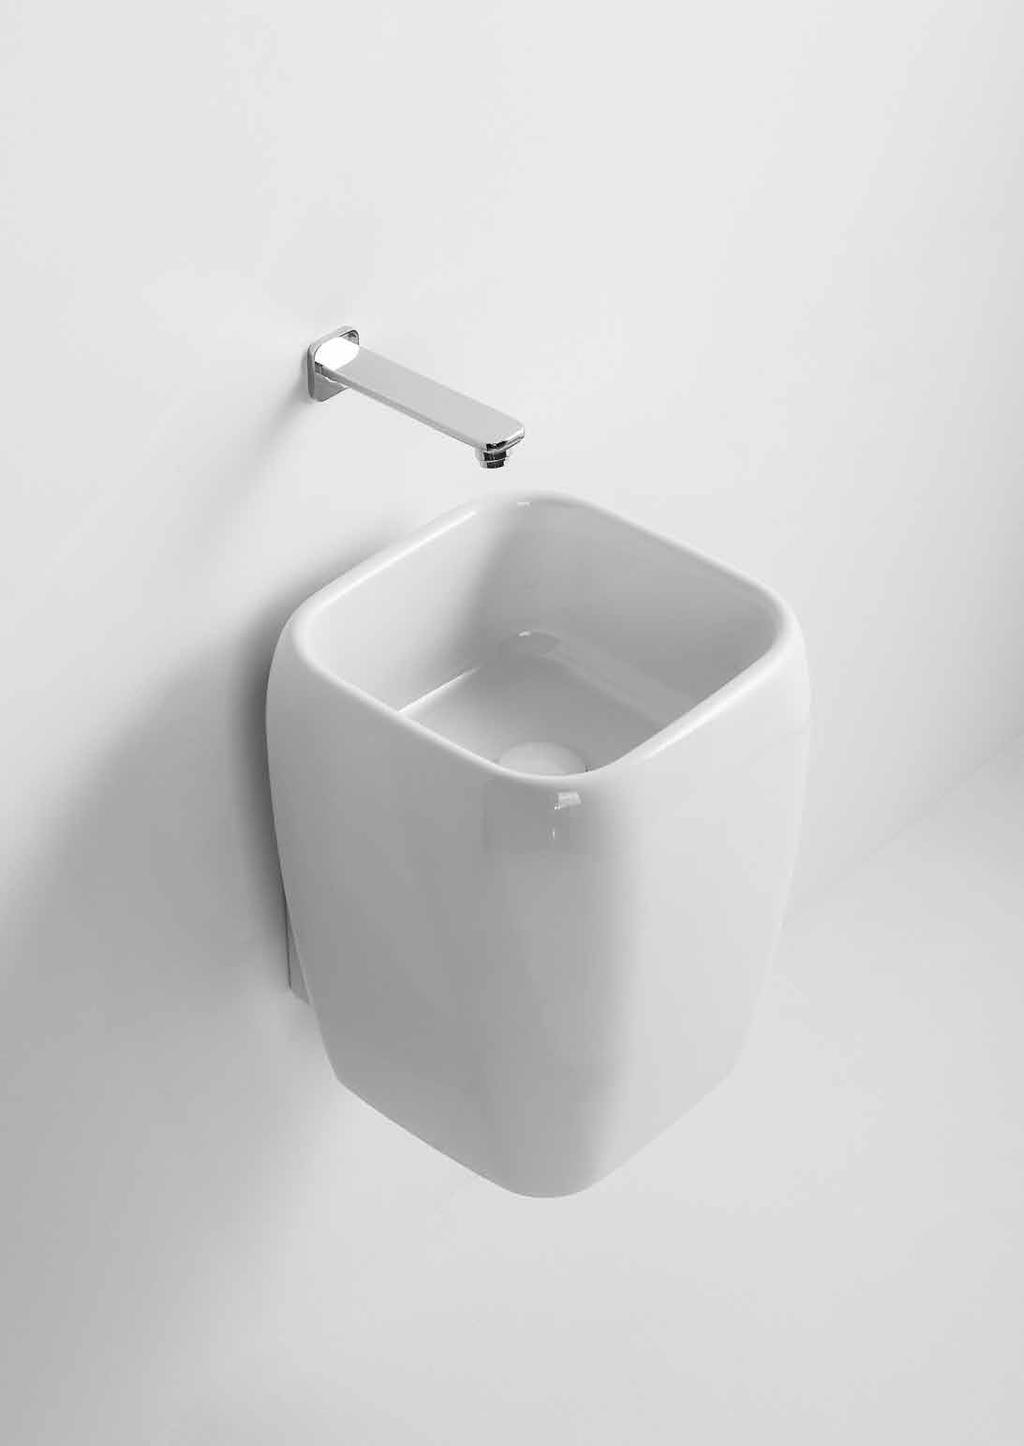 136 design Paolo D Arrigo collezione Shui 137 lavabo mezza colonna installazione sospesa